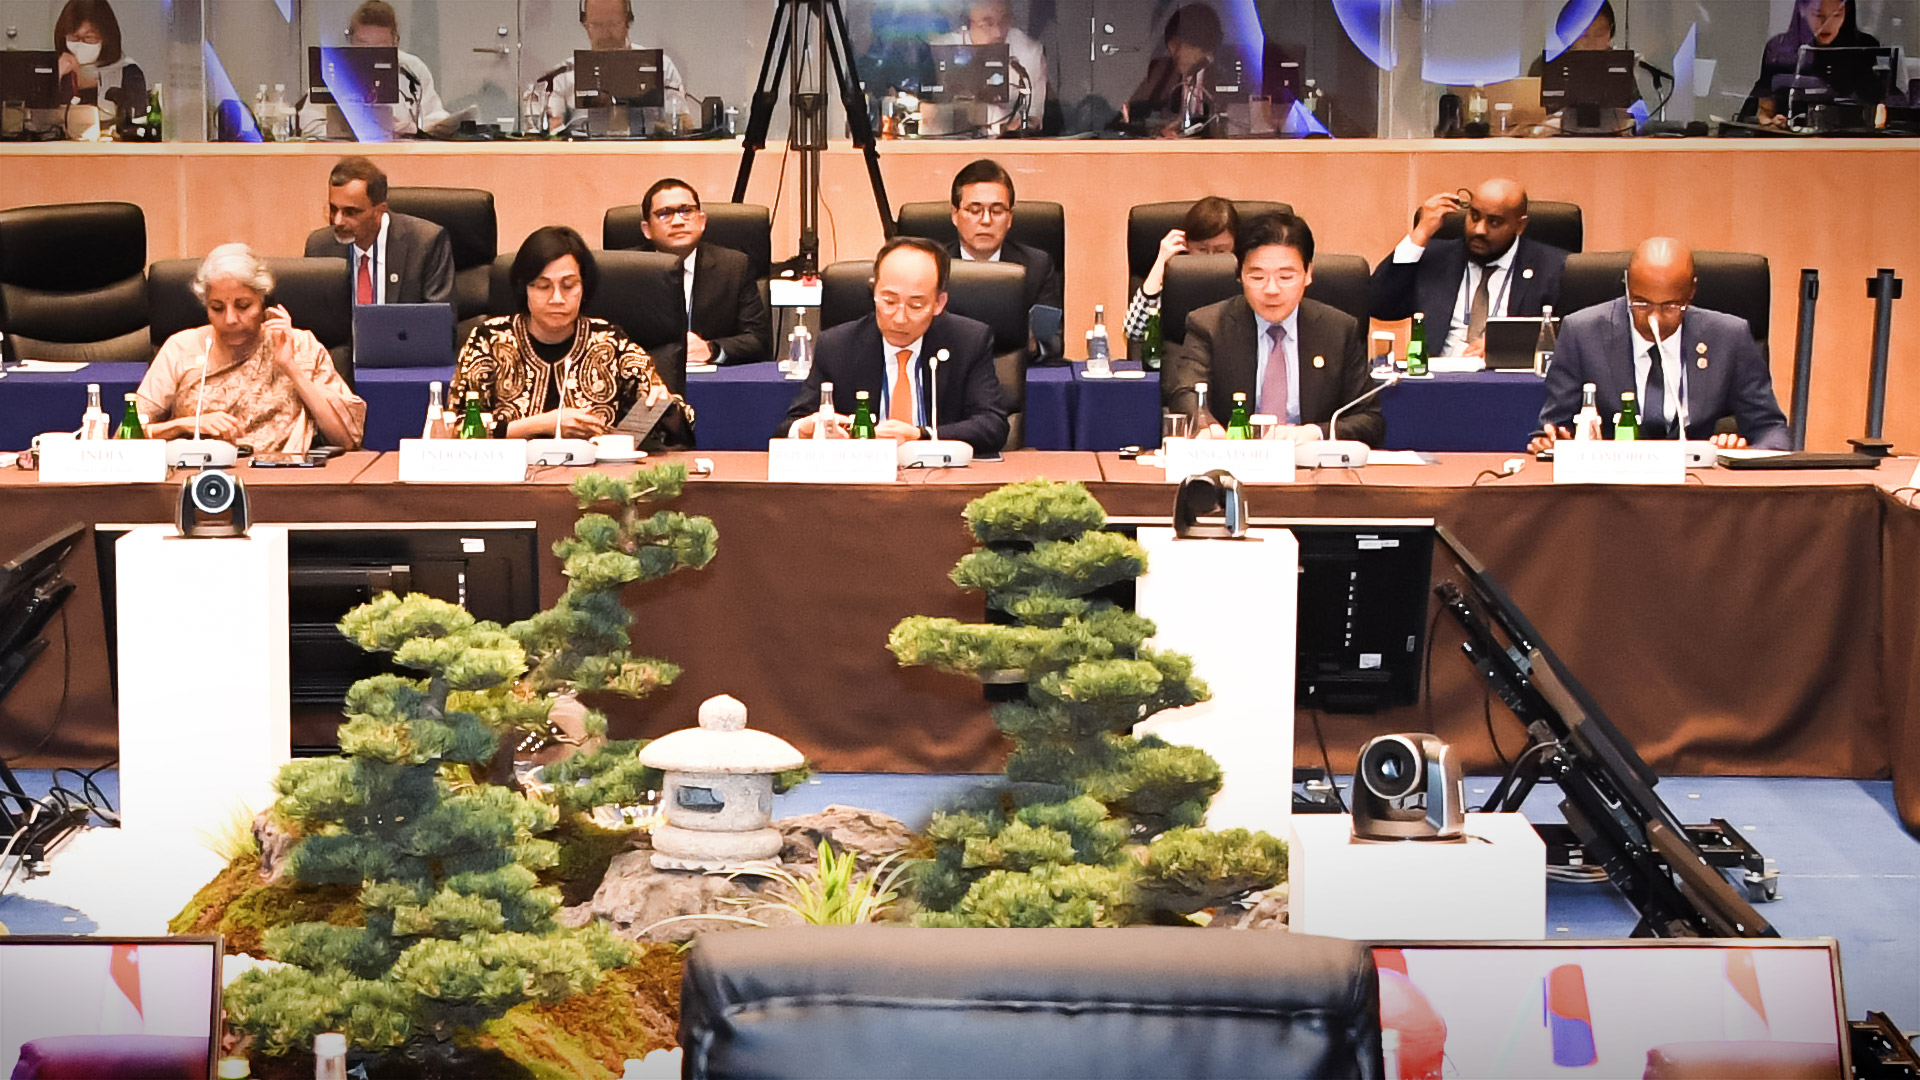 추경호 부총리 겸 기획재정부 장관은 5월 11일~13일, 일본 니가타에서 열리는 주요 7개국(G7) 재무장관·중앙은행총재 회의에 참석하여,  '개발도상국이 직면한 경제적 어려움 해결'과 '지속가능하고 포용적인 성장을 위한 글로벌 협력' 두 가지 세션에 대해 개도국의 빈곤 완화, 경제 성장 등을  지원하기 위한 정책 방안에 대해 제언했습니다.